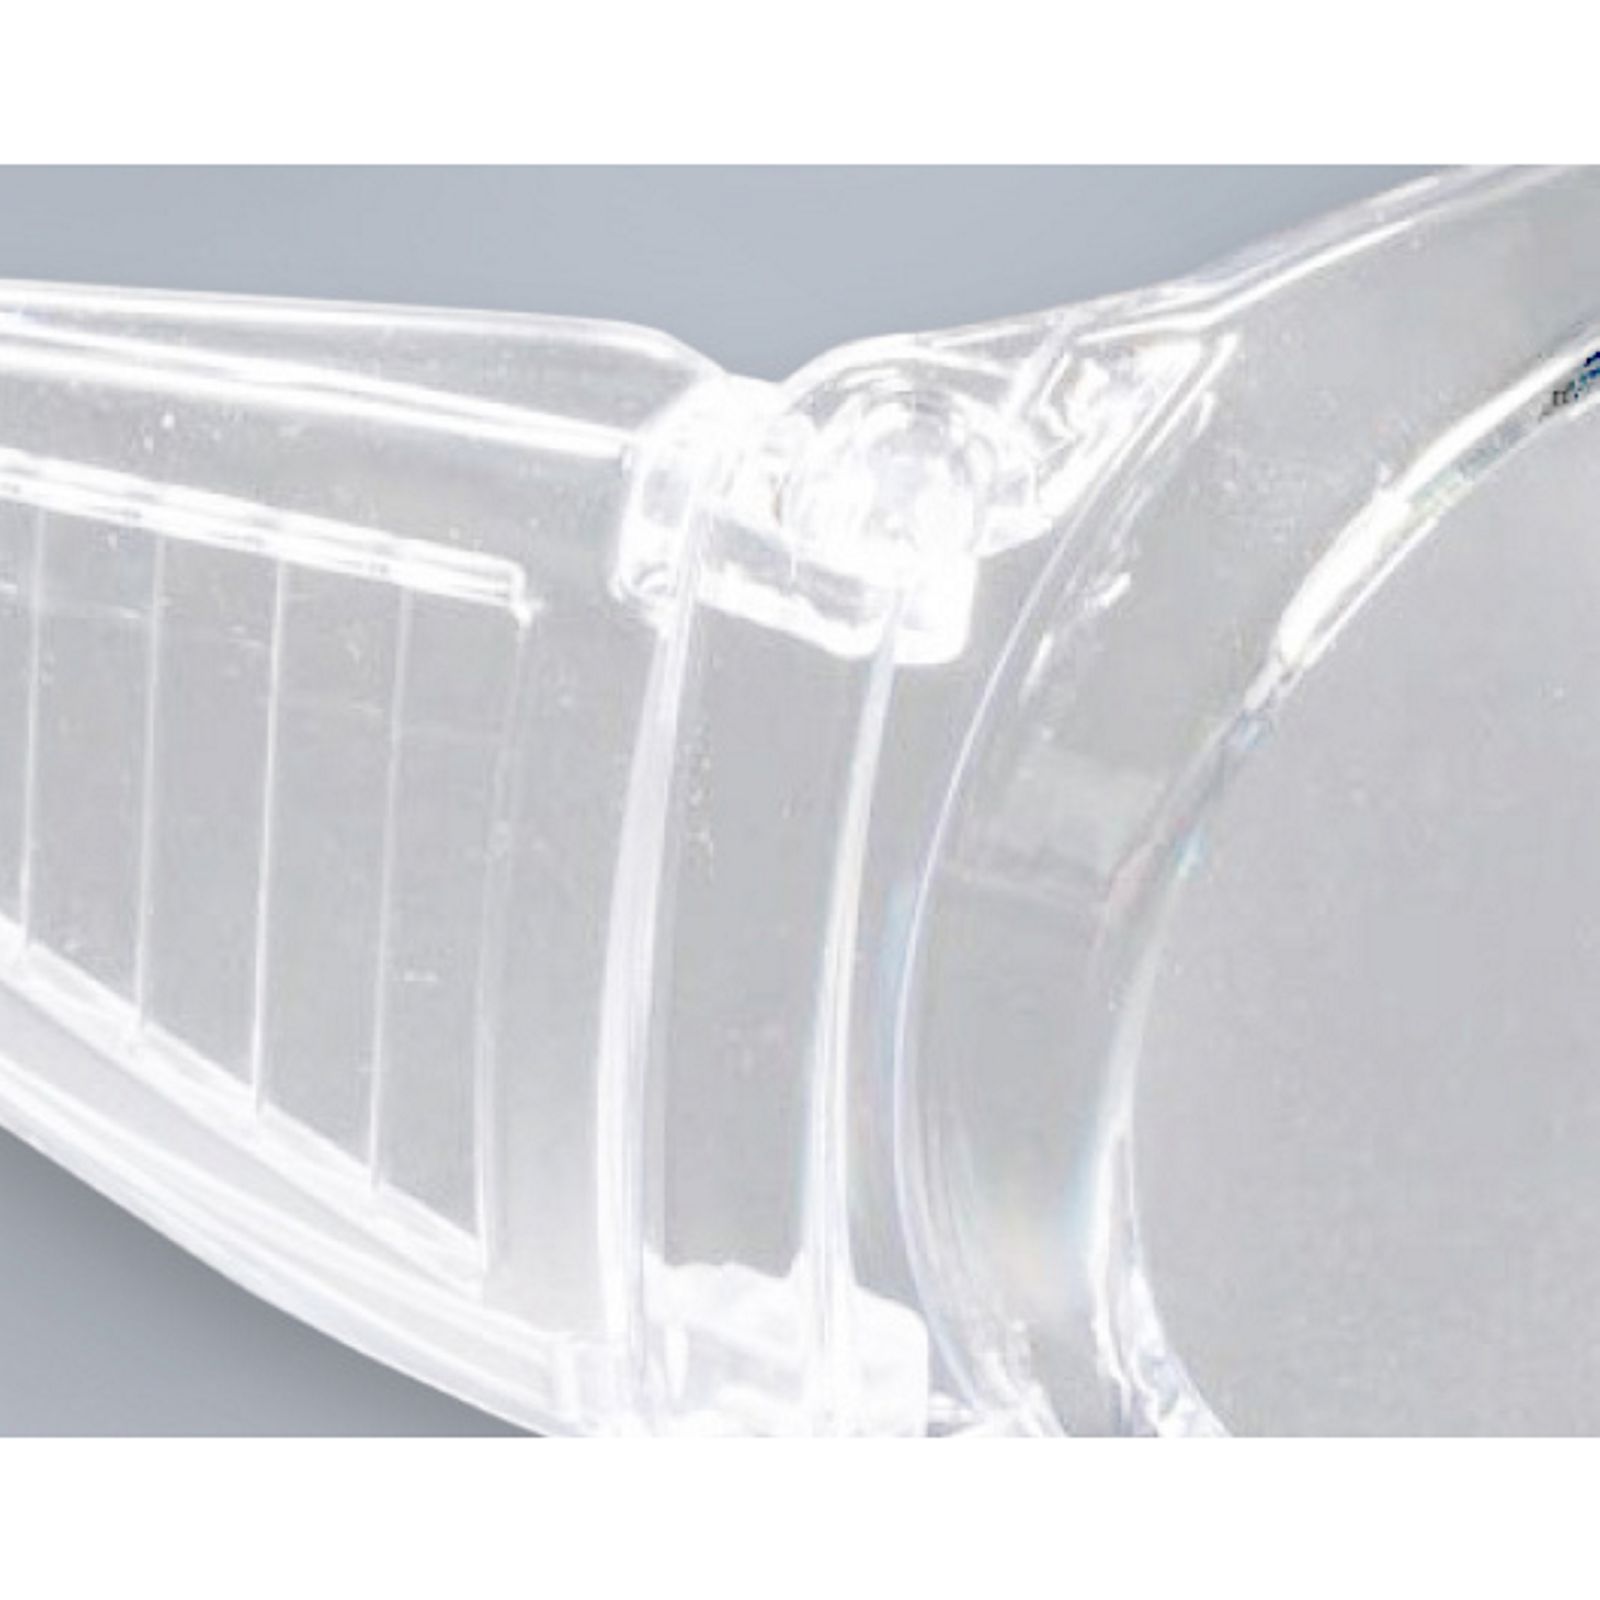 Vollsicht Schutzbrille Polycarbonat spritzfest schlagfest Antifog 100% UV Schutz